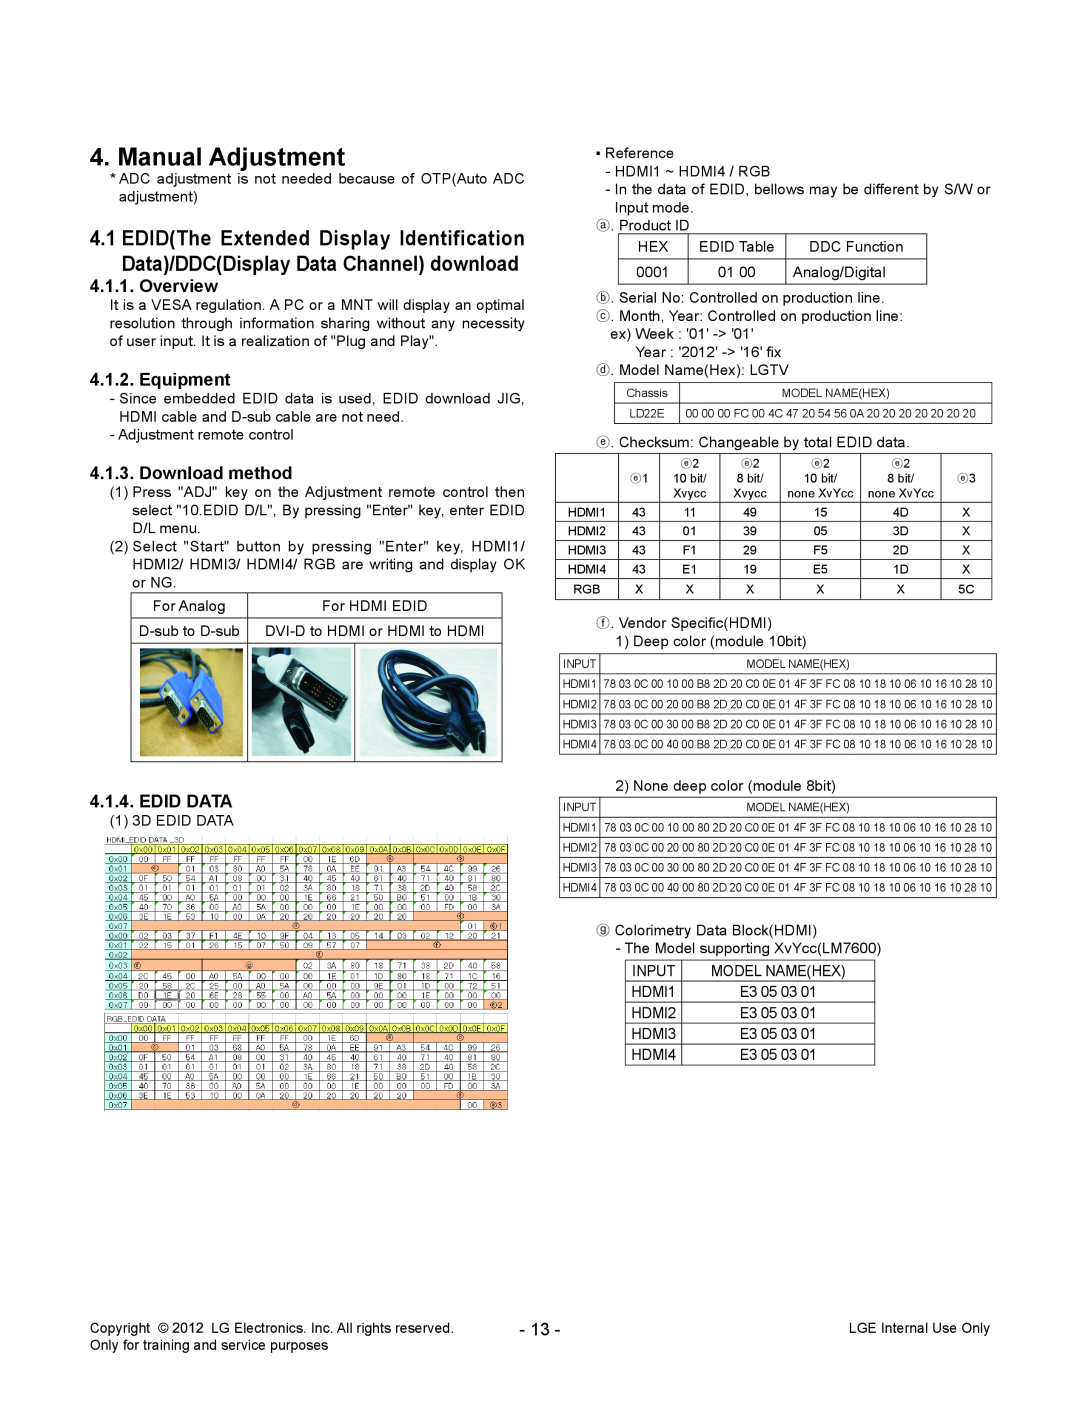 LG Electronics 47LM761S/761T-ZA, MFL67360901 Manual Adjustment, Overview, Equipment, Download method, Edid Data 